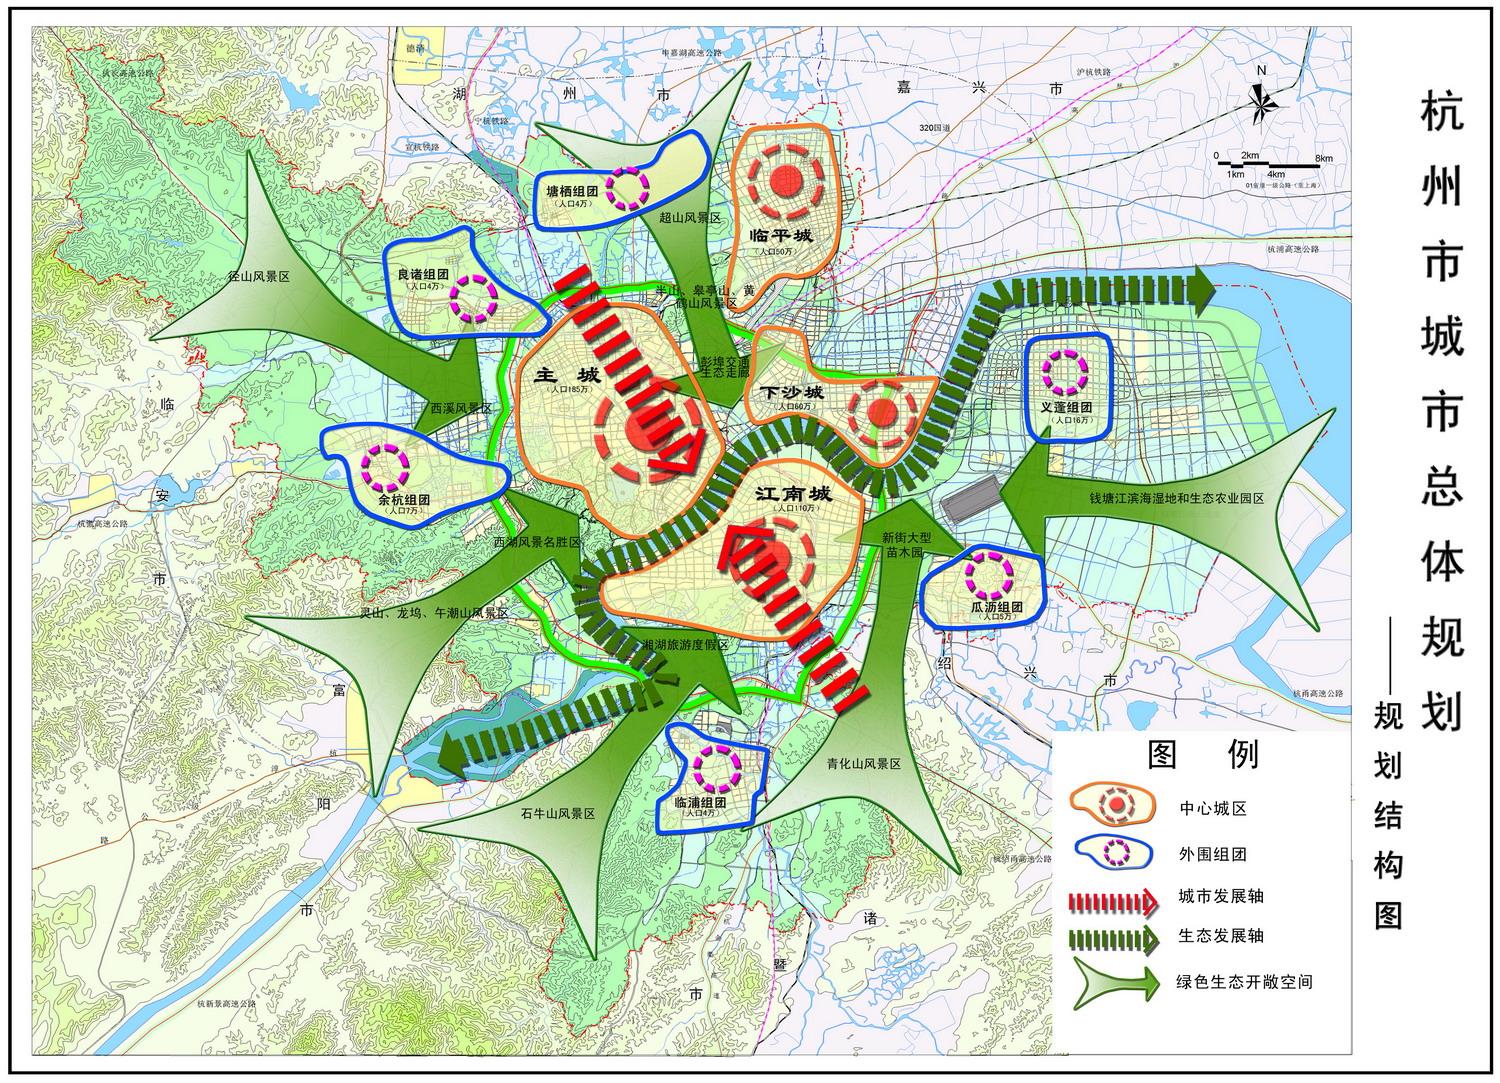 杭州城区的未来发展是如何规划的? 